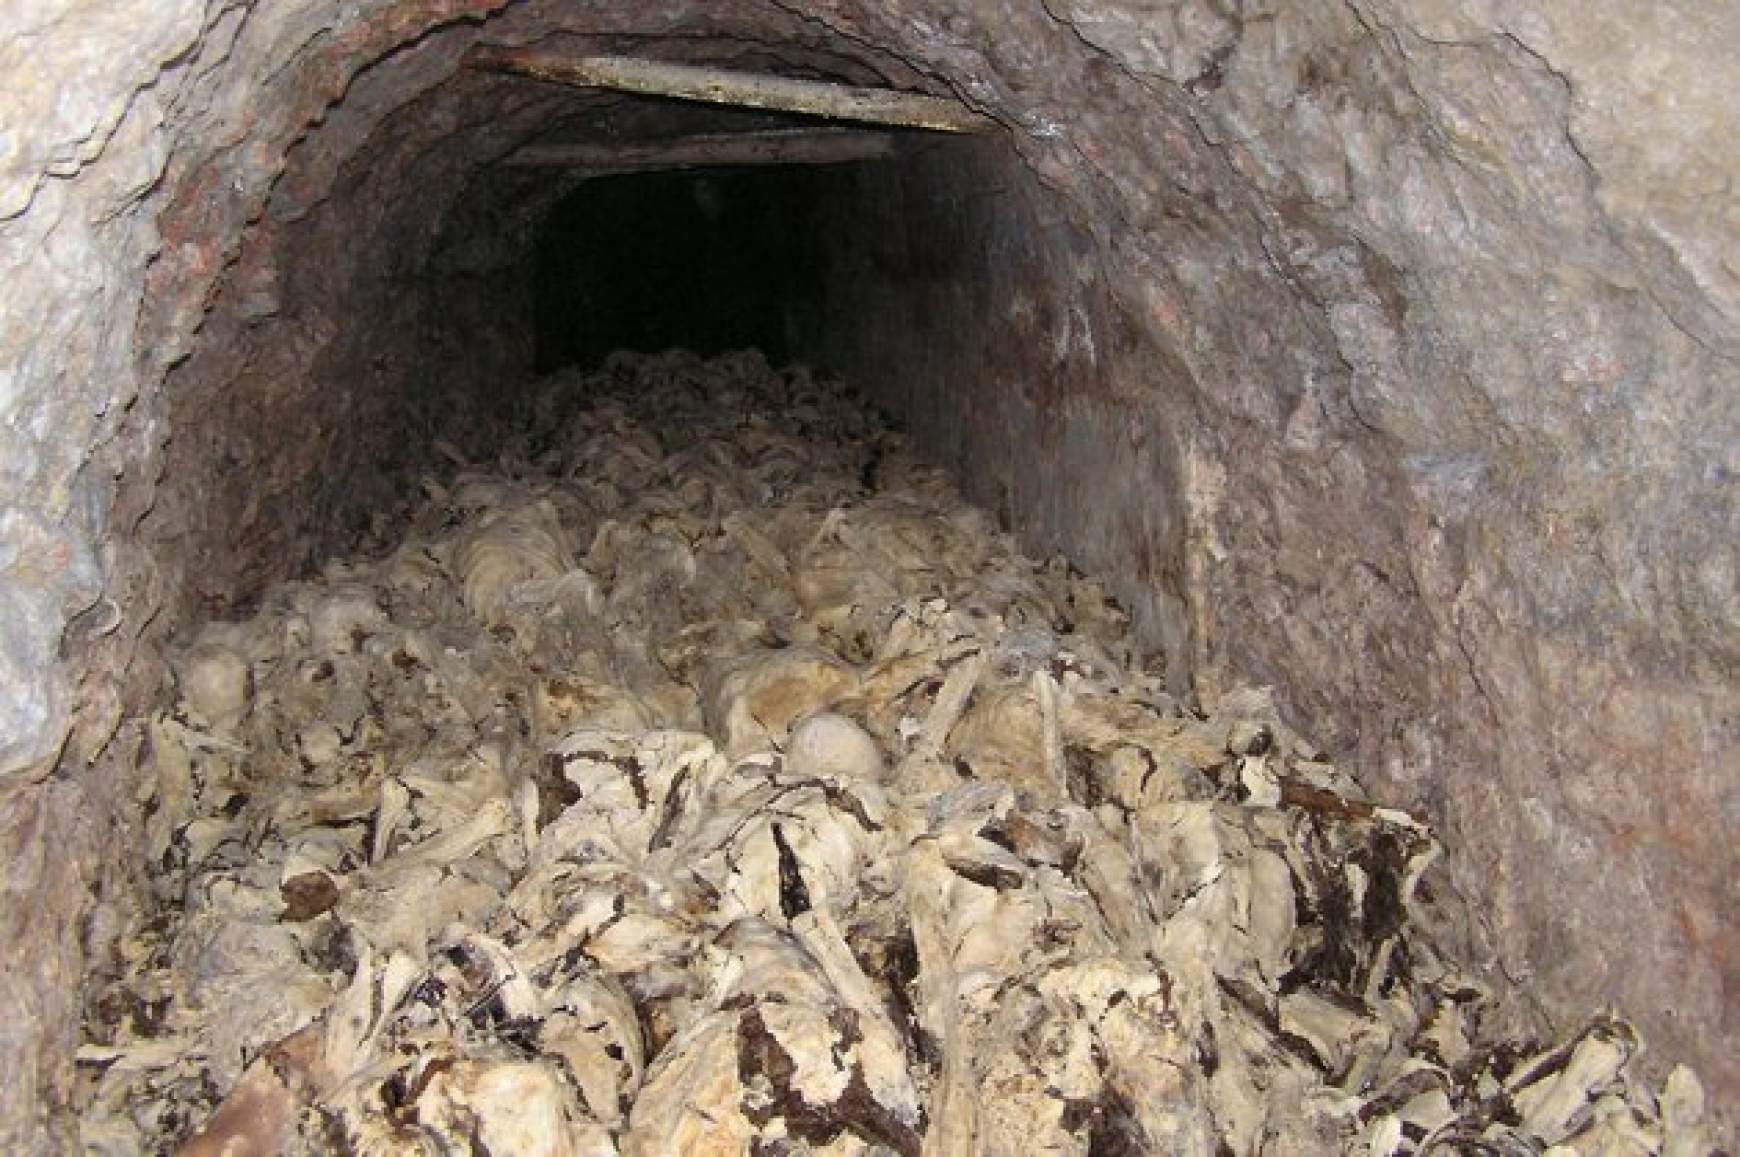 Ebben a barlangban sok ezer lemészárolt ember maradványait rejtették el